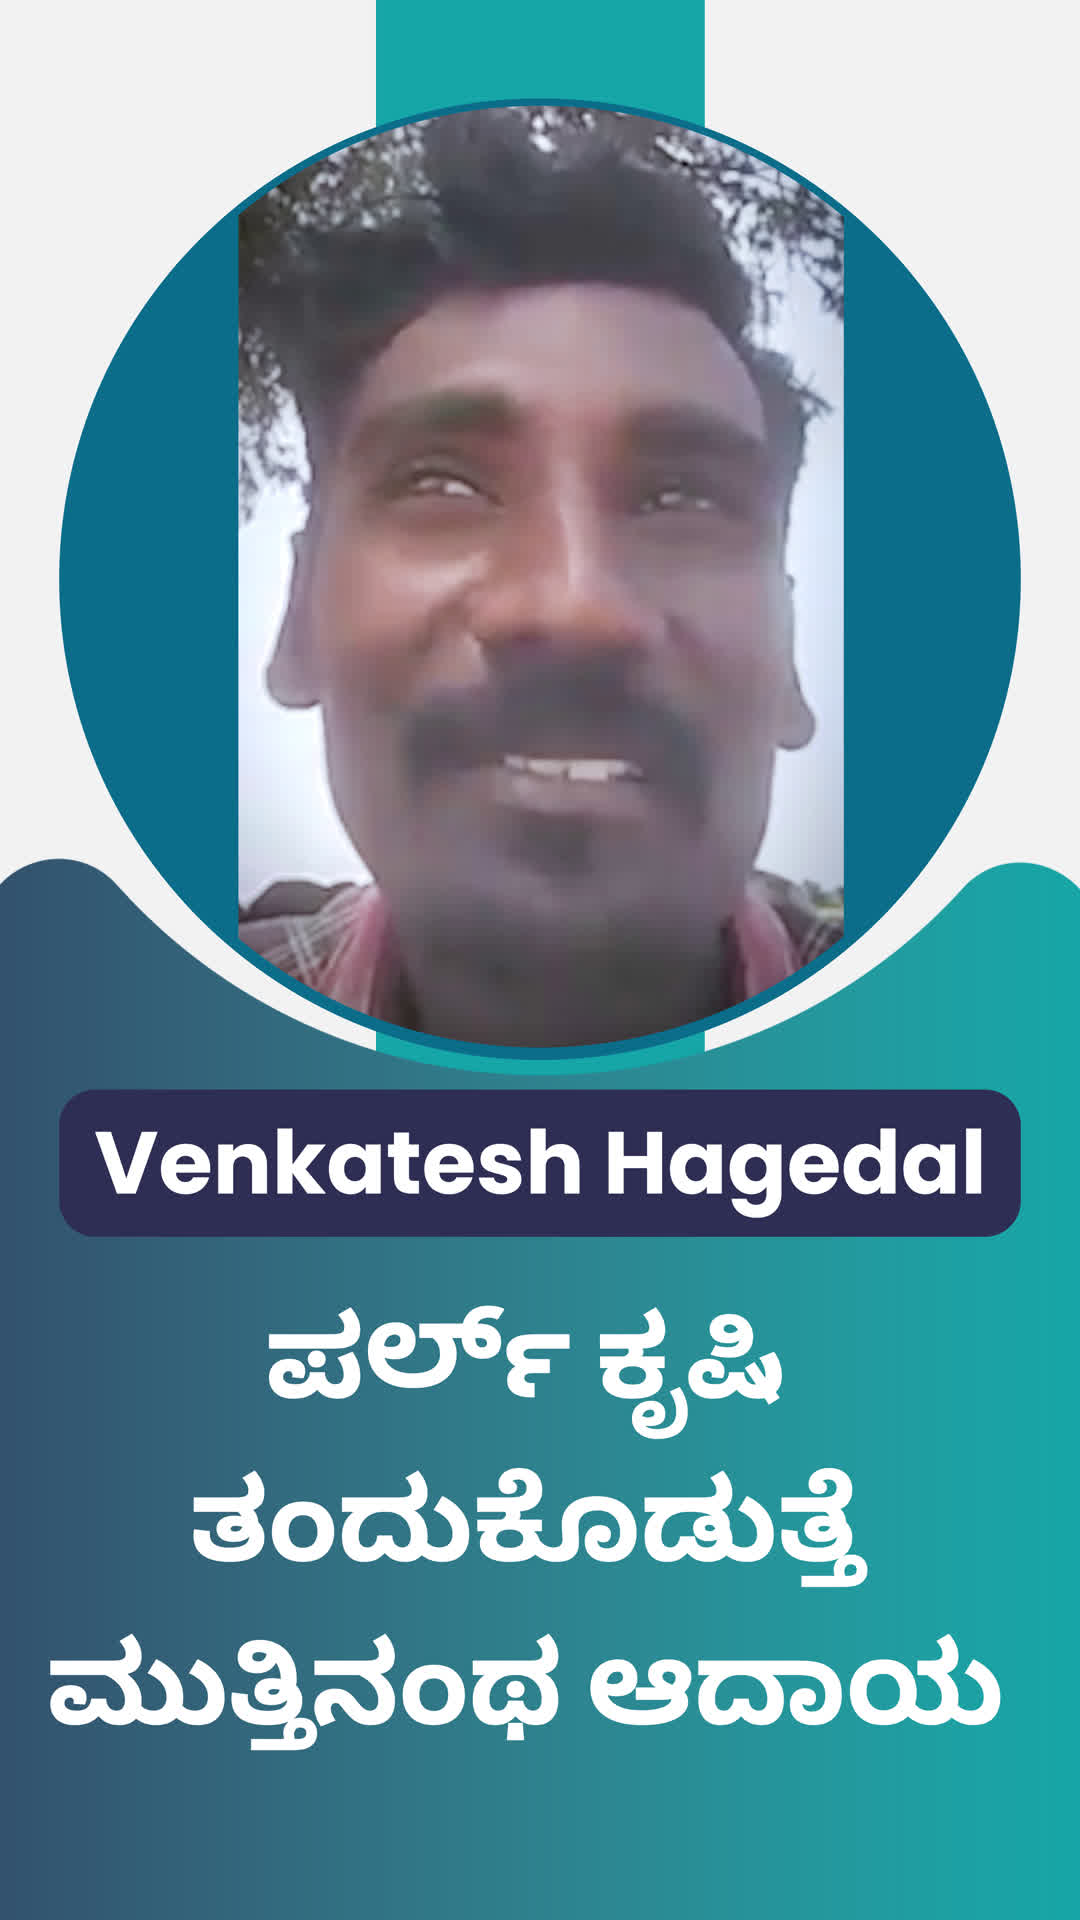 venkatesh's Honest Review of ffreedom app - Koppal ,Karnataka